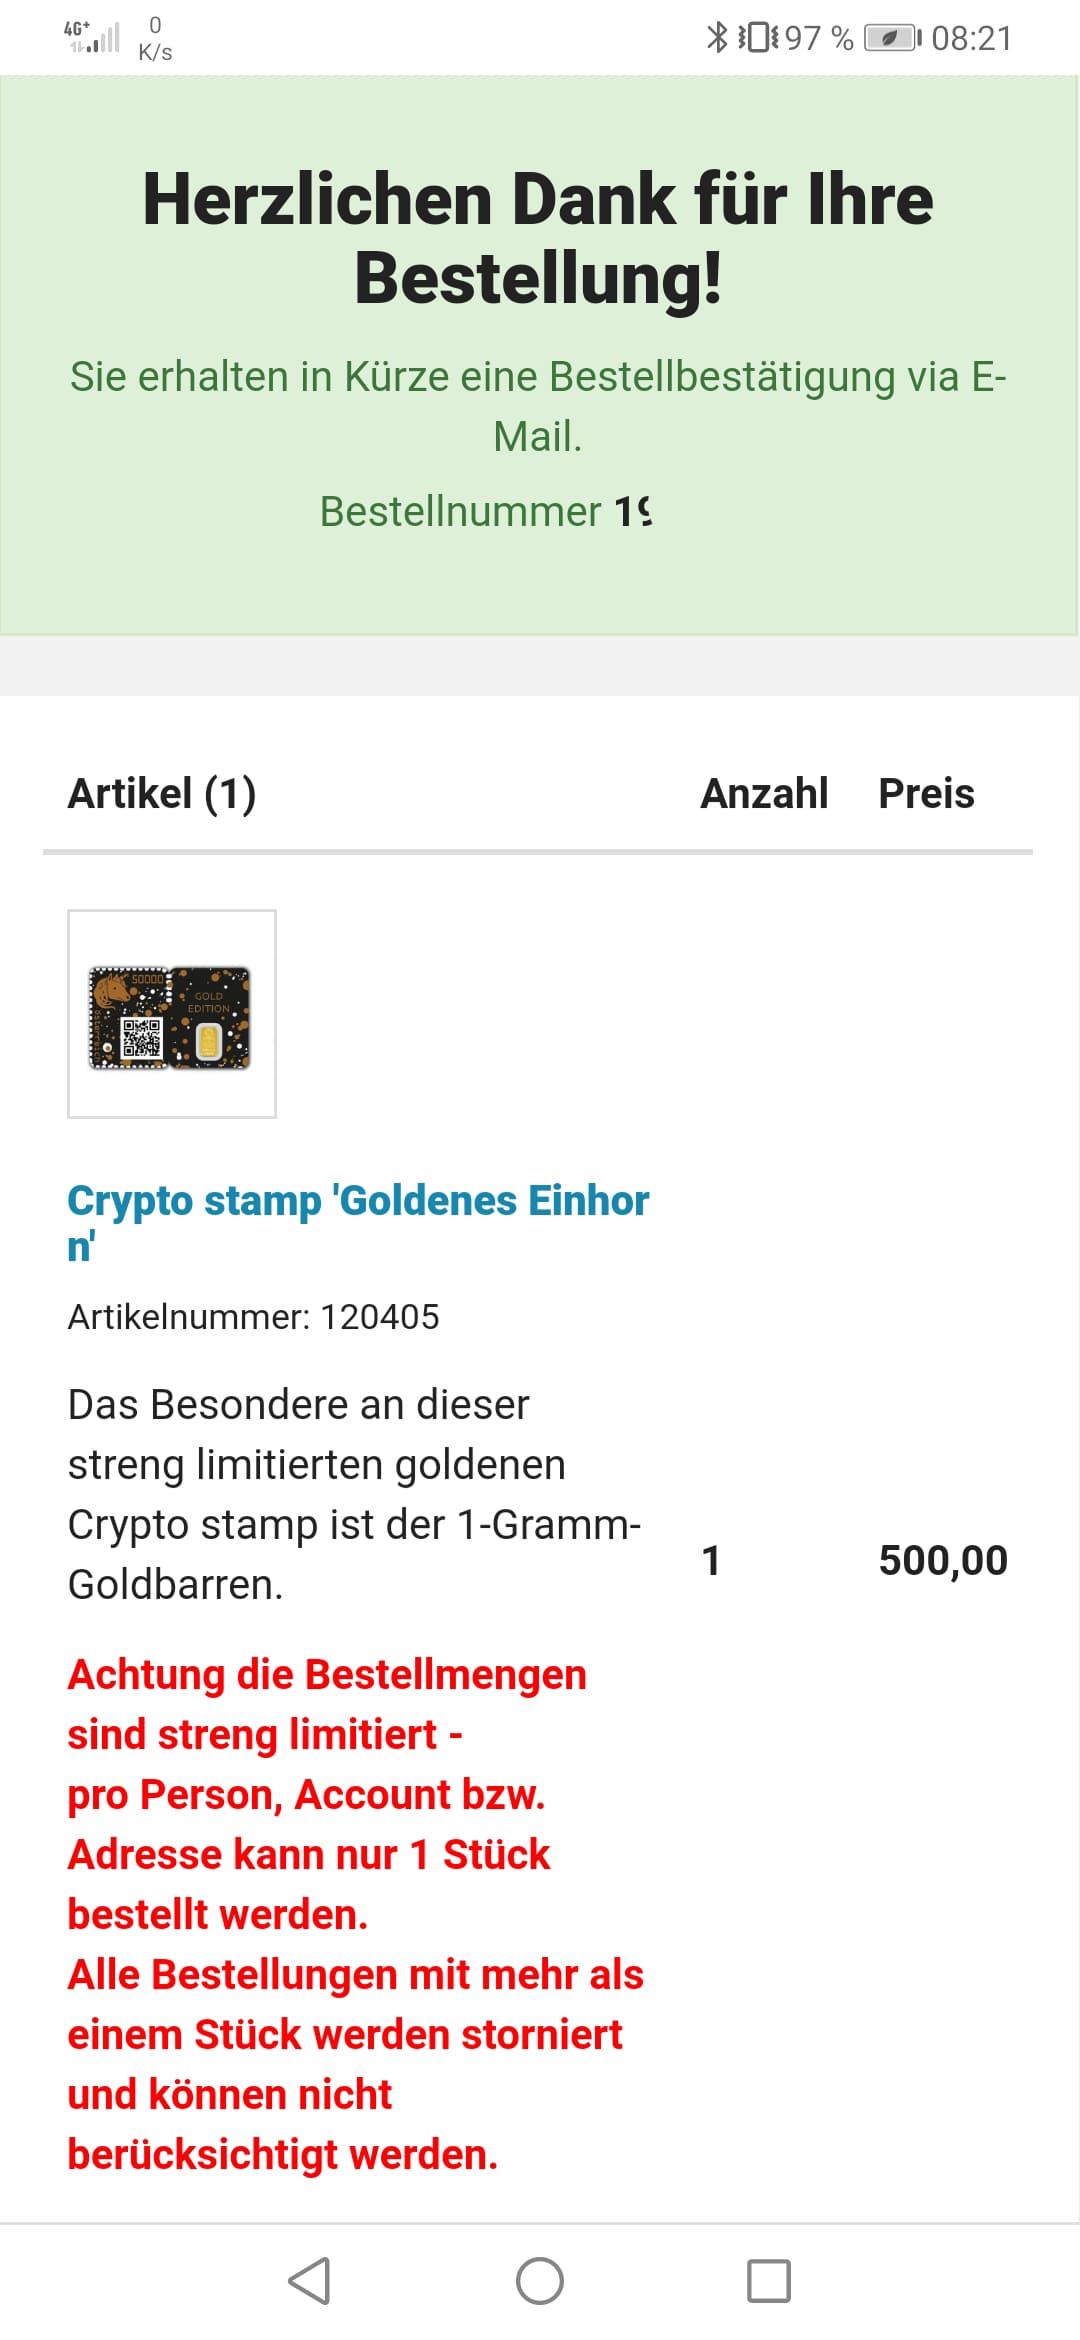 Crypto Stamp Goldene Einhorn Gold Einhorn - GEWINNSPIEL: Crypto Stamp 2.0 Goldenes Einhorn golden Unicorn